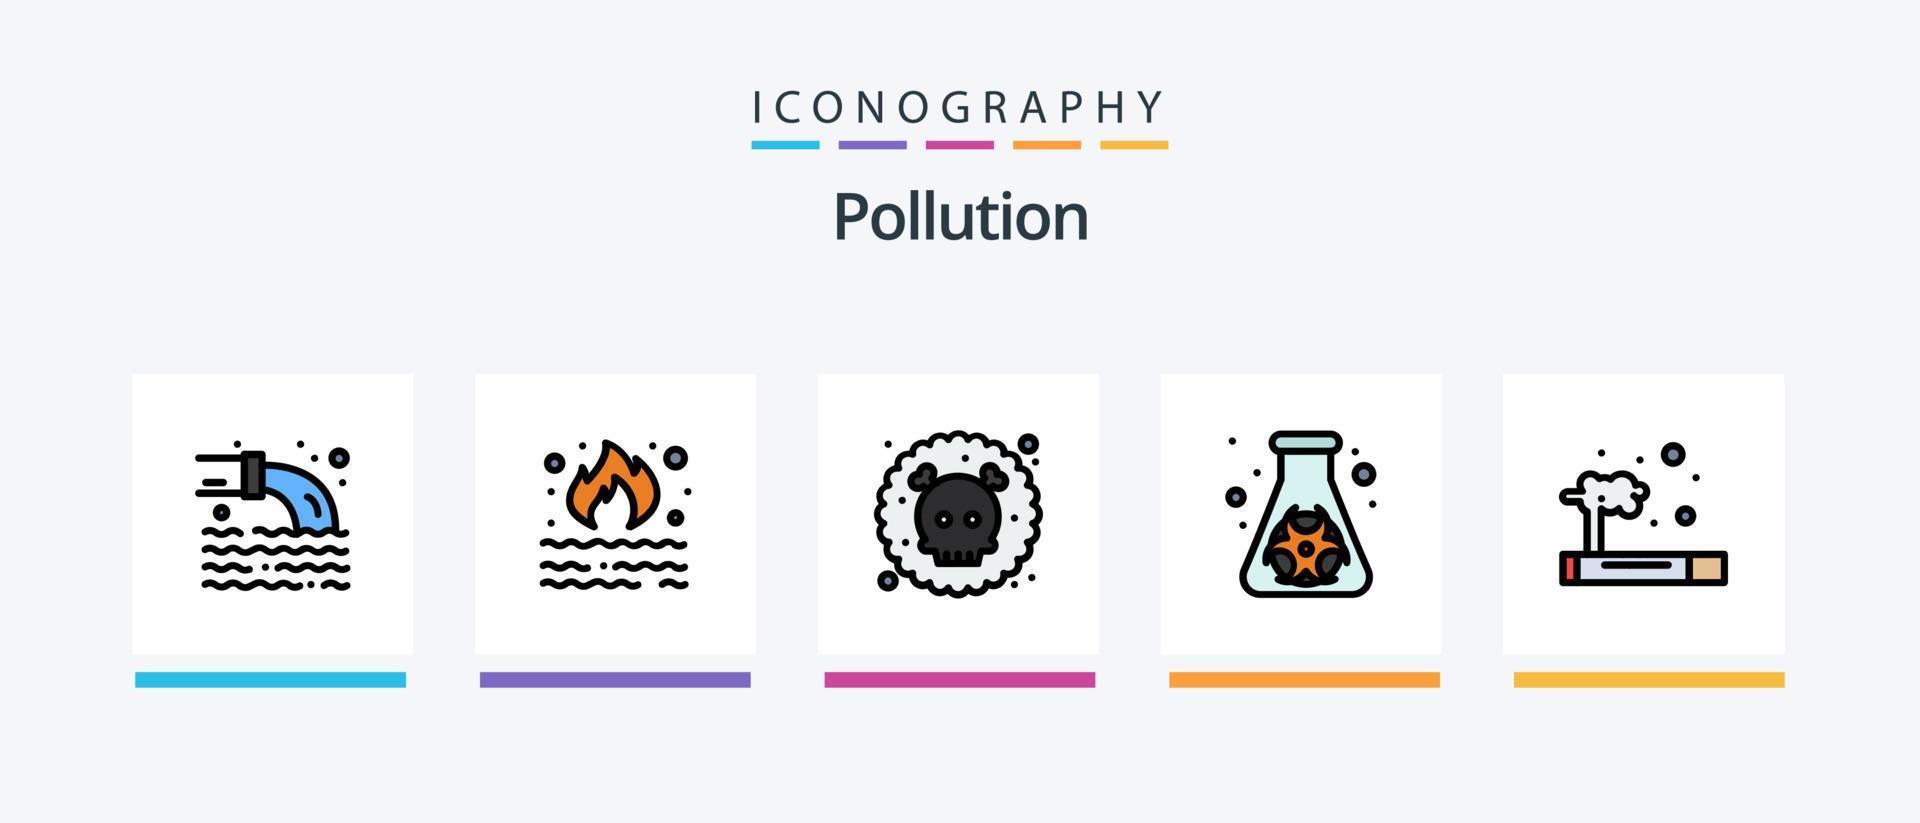 la línea de contaminación llenó el paquete de 5 íconos que incluye . desperdiciar. fuego. fumar. gas. diseño de iconos creativos vector